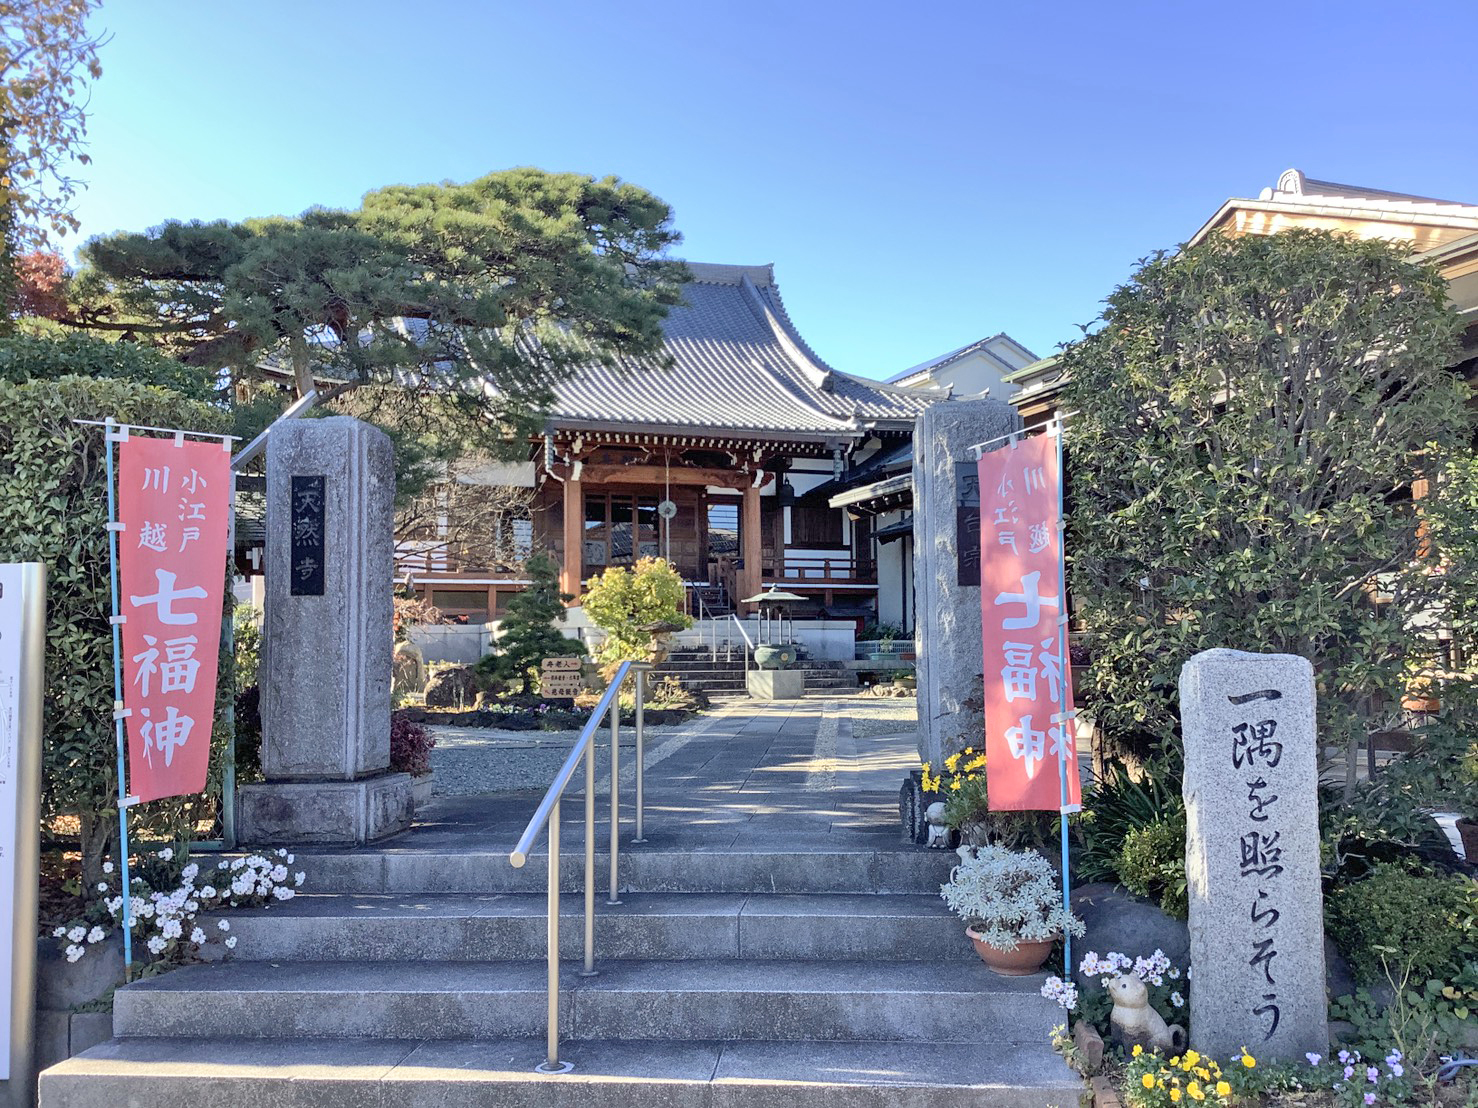 天然寺(Ten'nenji temple)